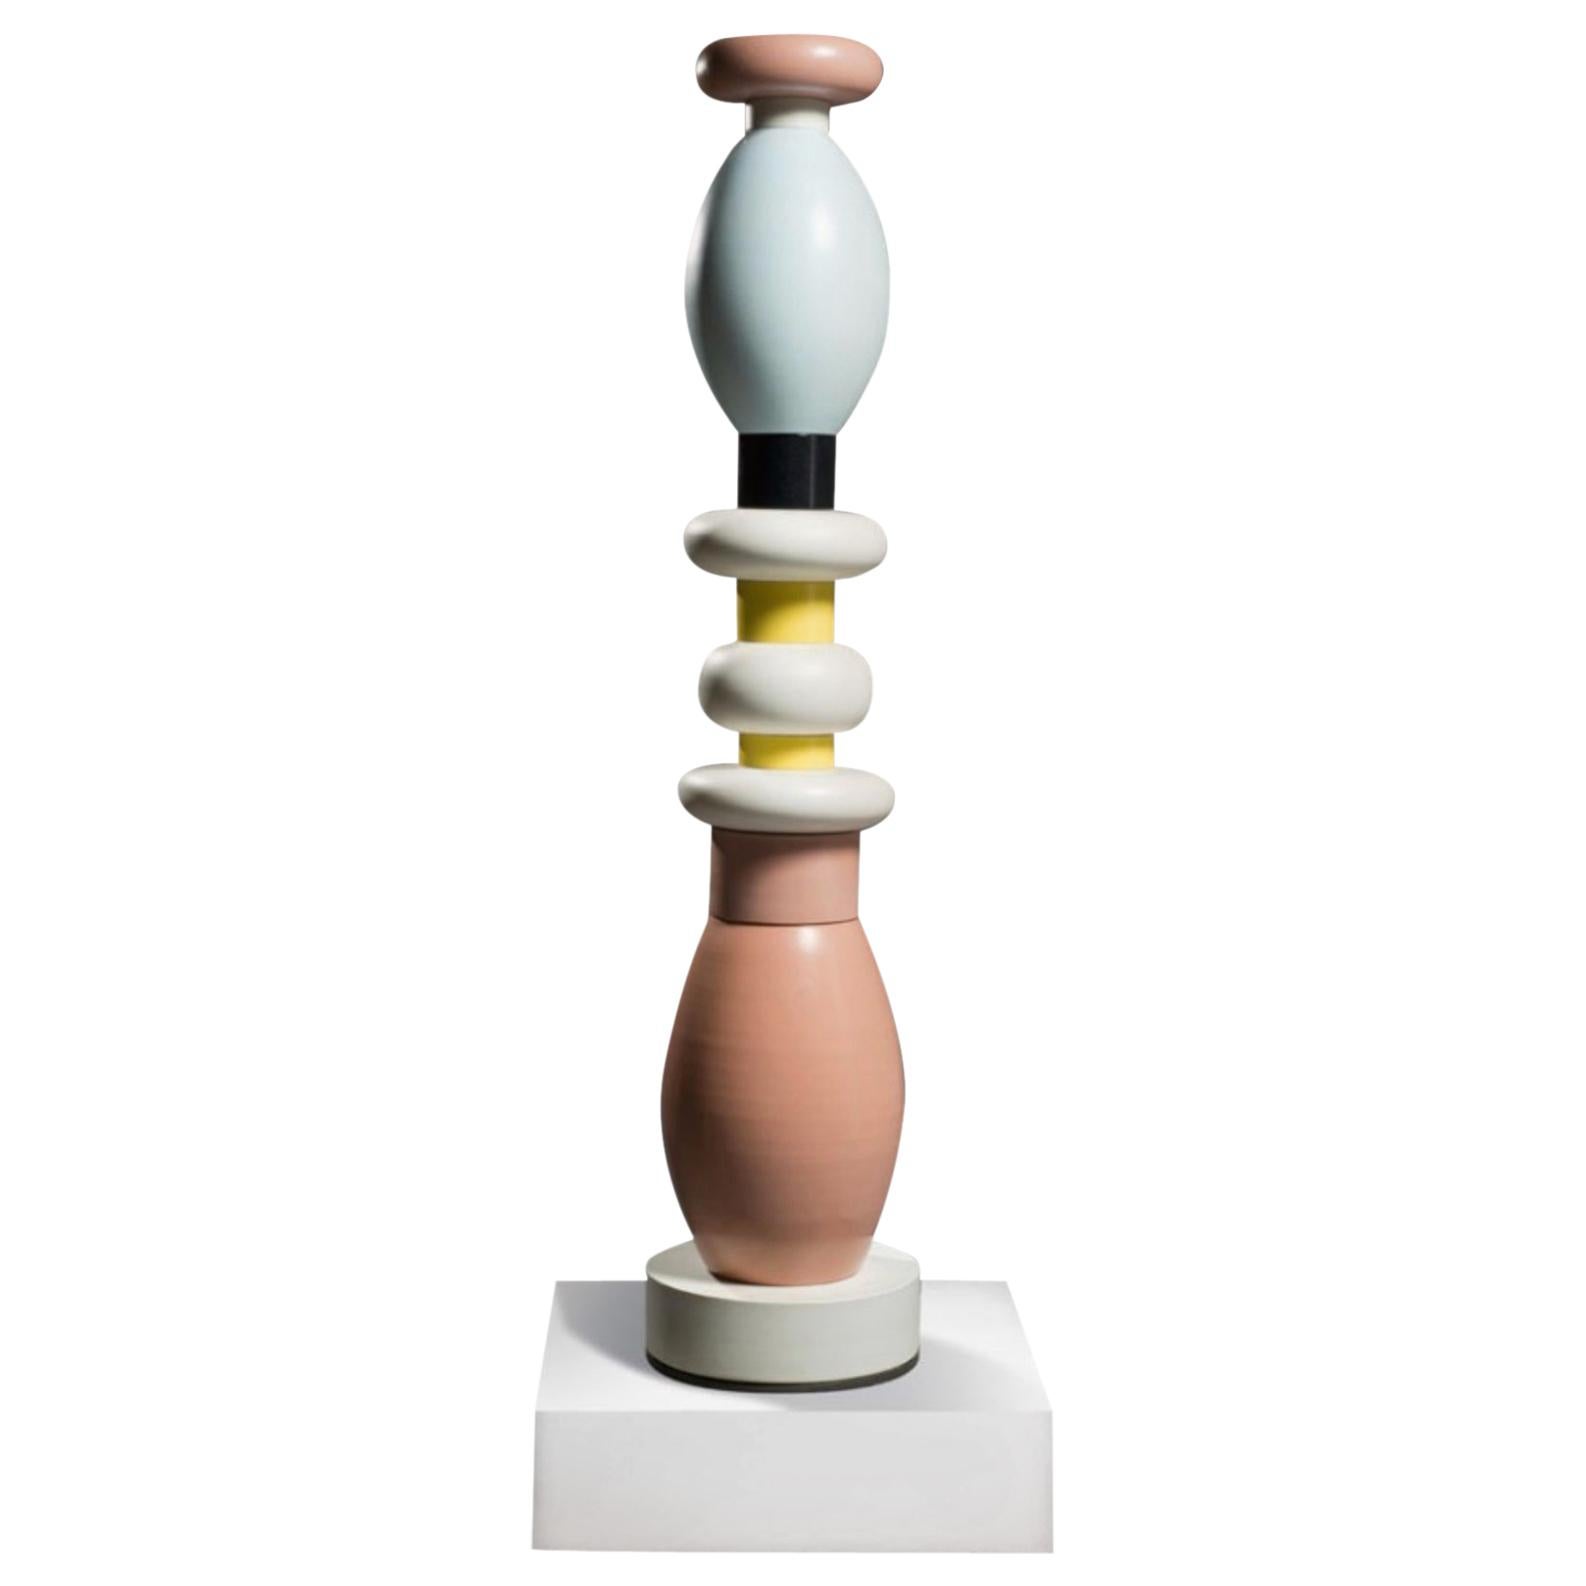 Ettore Sottsass, "TOTEM", Bitossi Ceramic, Number 29/150